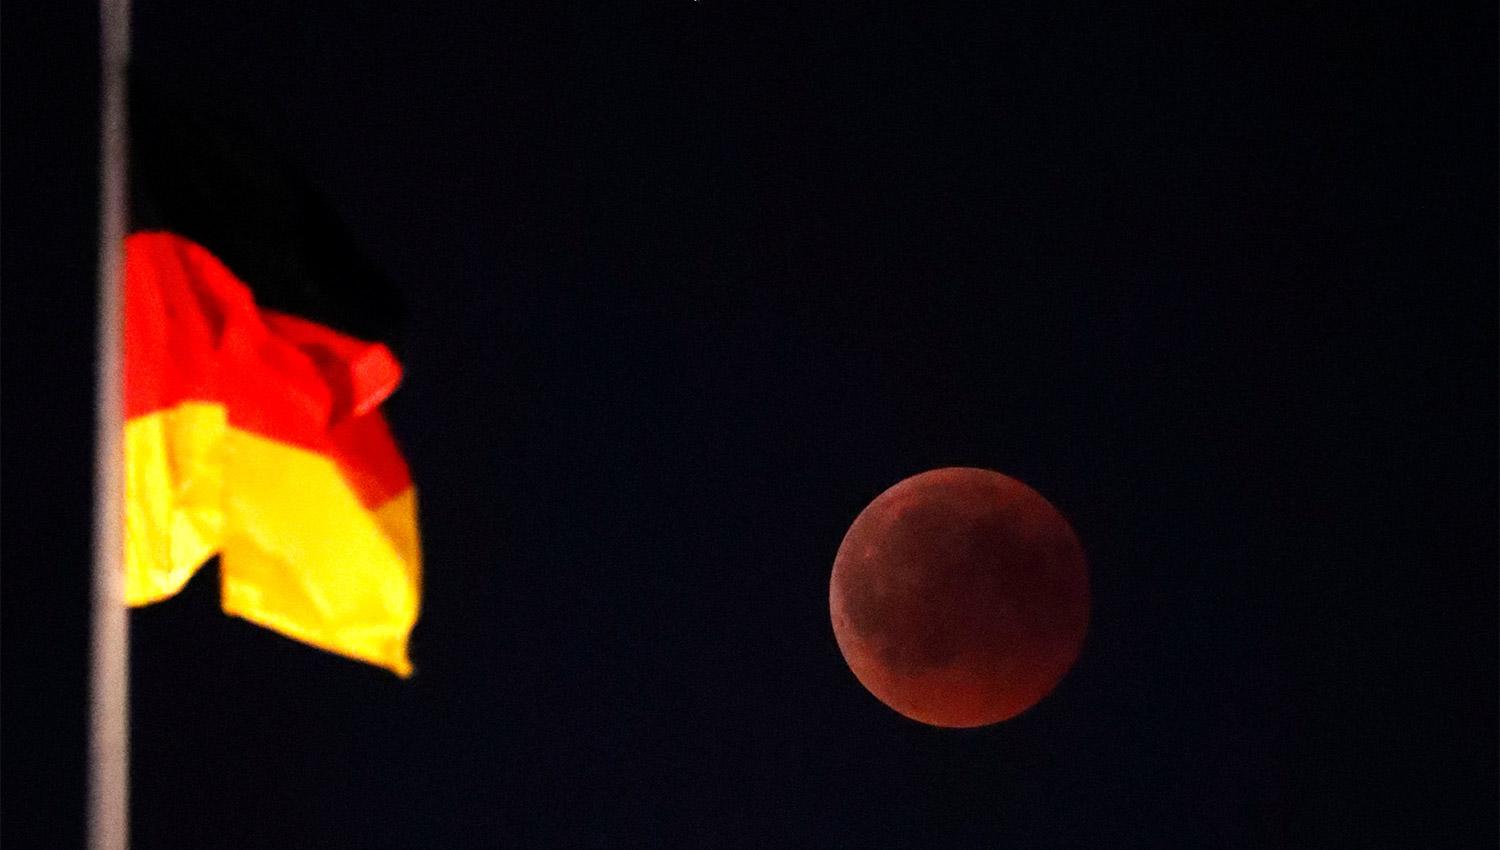 Galería de fotos: así se vio la luna de sangre alrededor del mundo